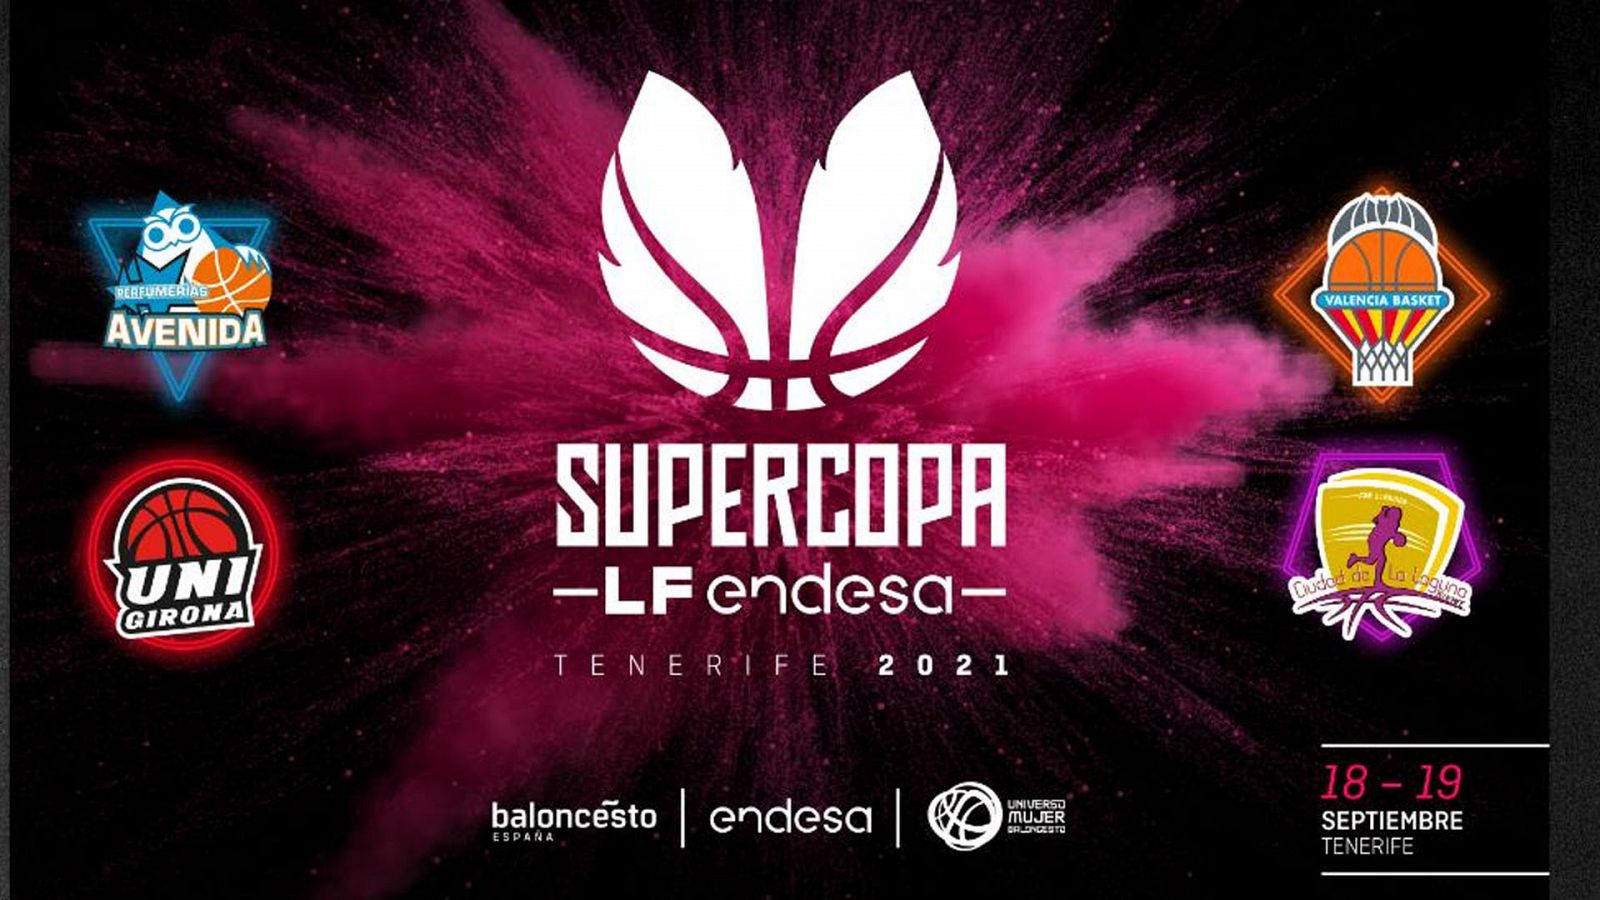 Perfumerías Avenida, Spar Girona, Valencia Basket y Clarinos Tenerife se jugan la Supercopa.